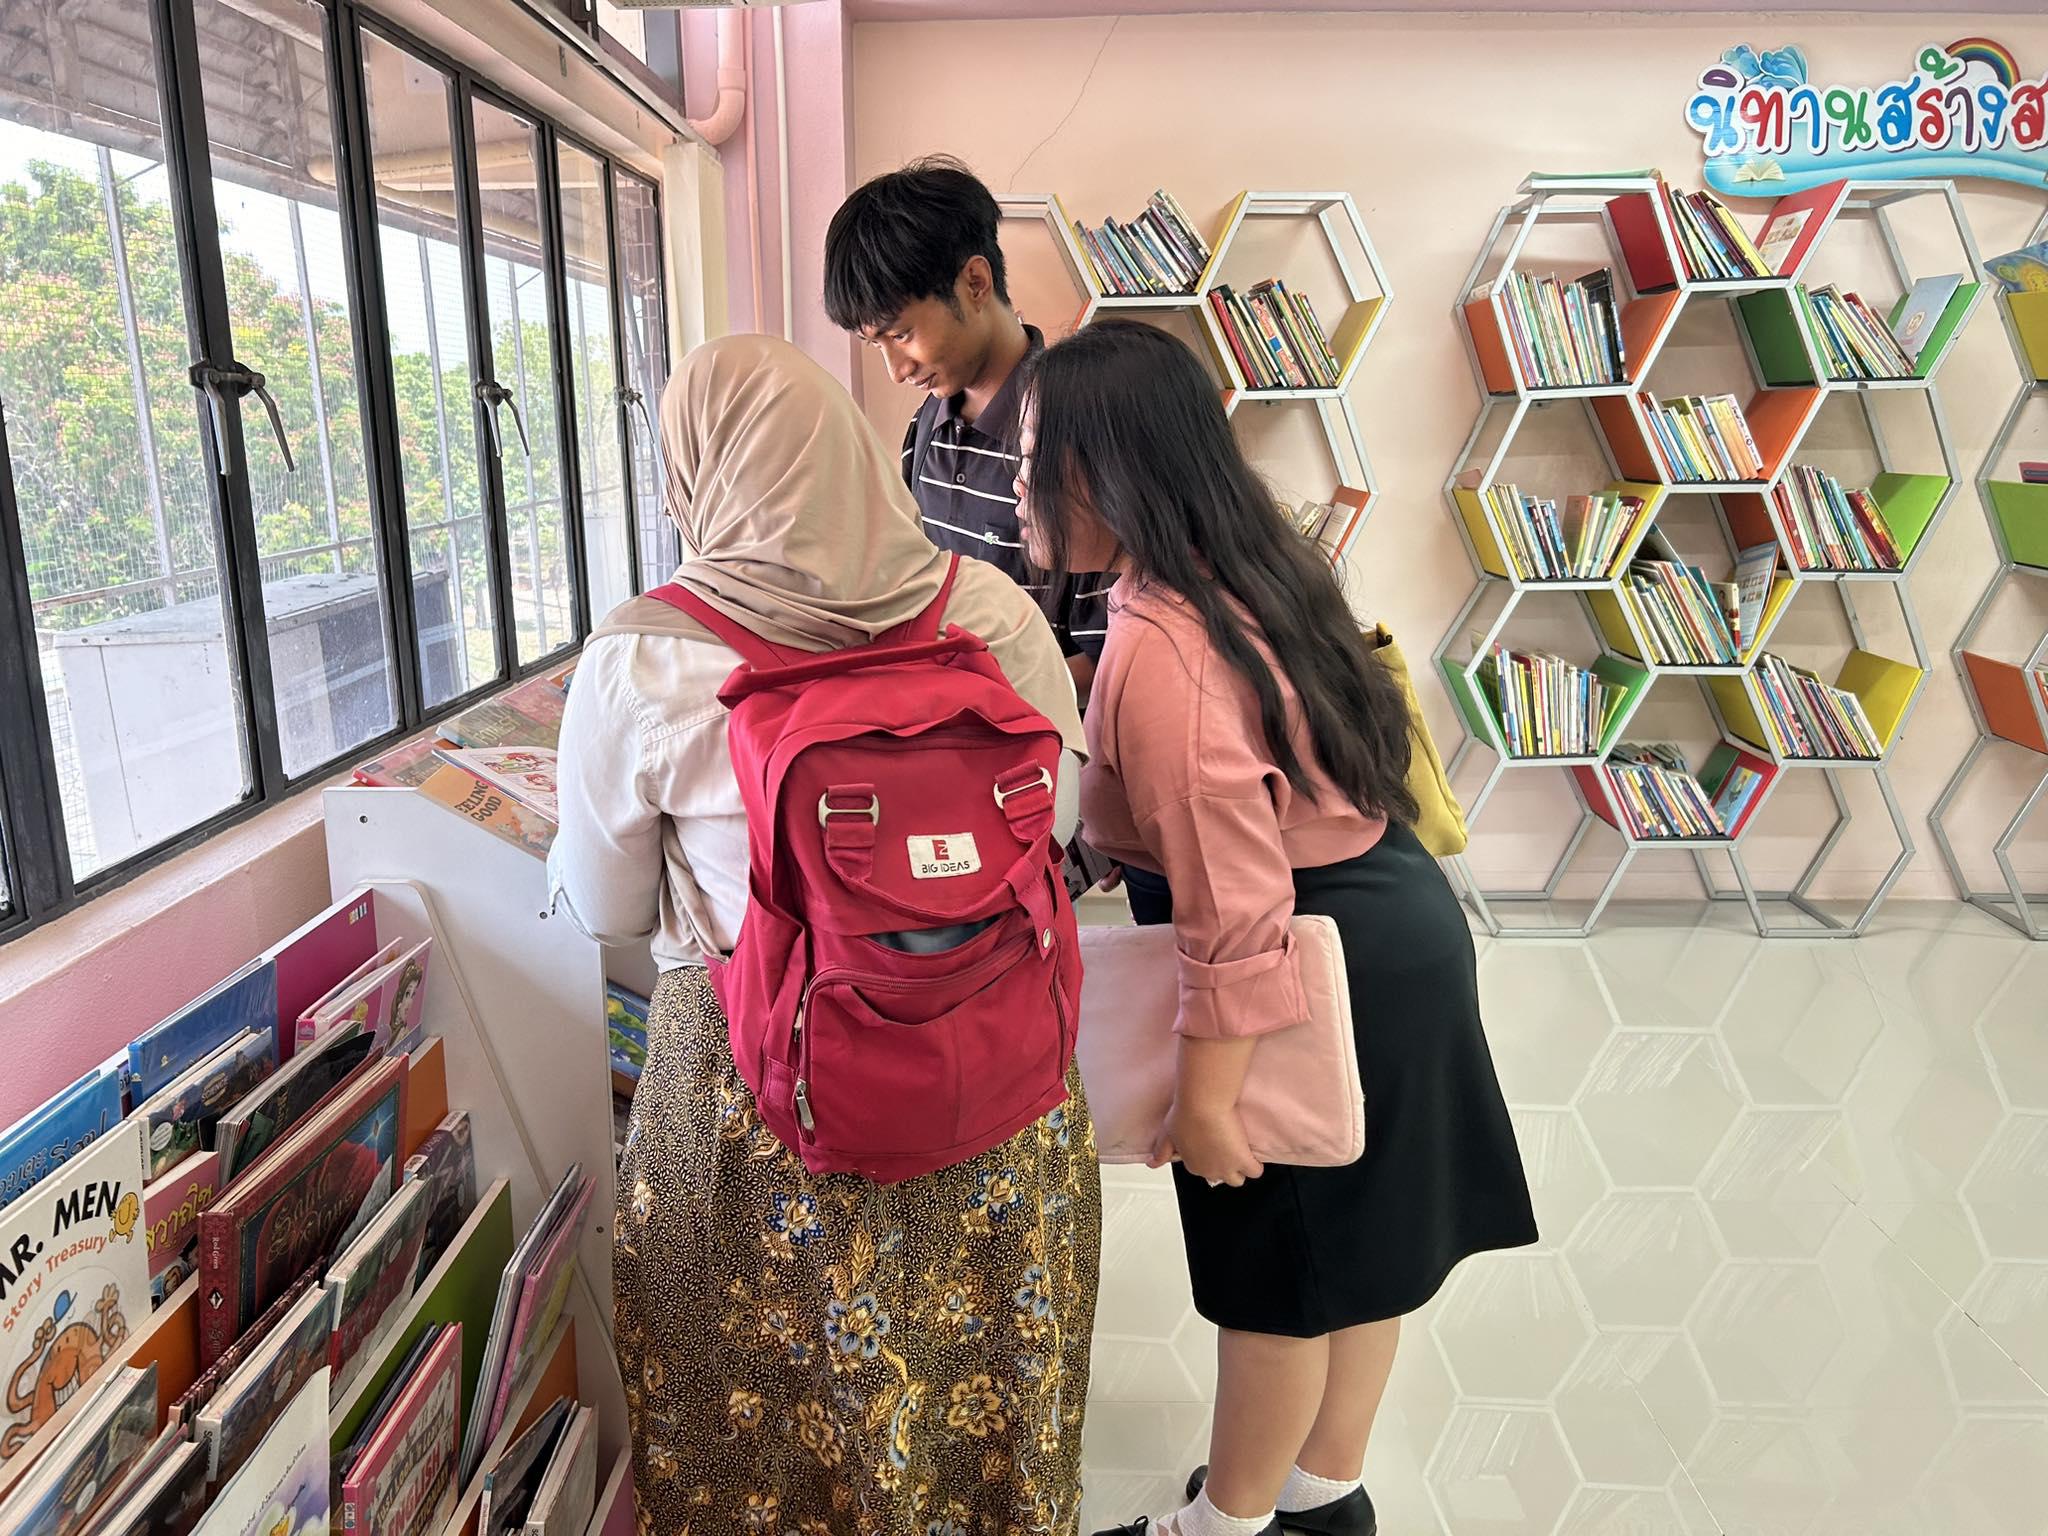 ต้อนรับนักศึกษาแลกเปลี่ยนจาก Universitas Negeri Surabaya ประเทศอินโดนีเซีย เยี่ยมชมสำนักวิทยบริการและเทคโนโลยีสารสนเทศ มหาวิทยาลัยราชภัฏกำแพงเพชร